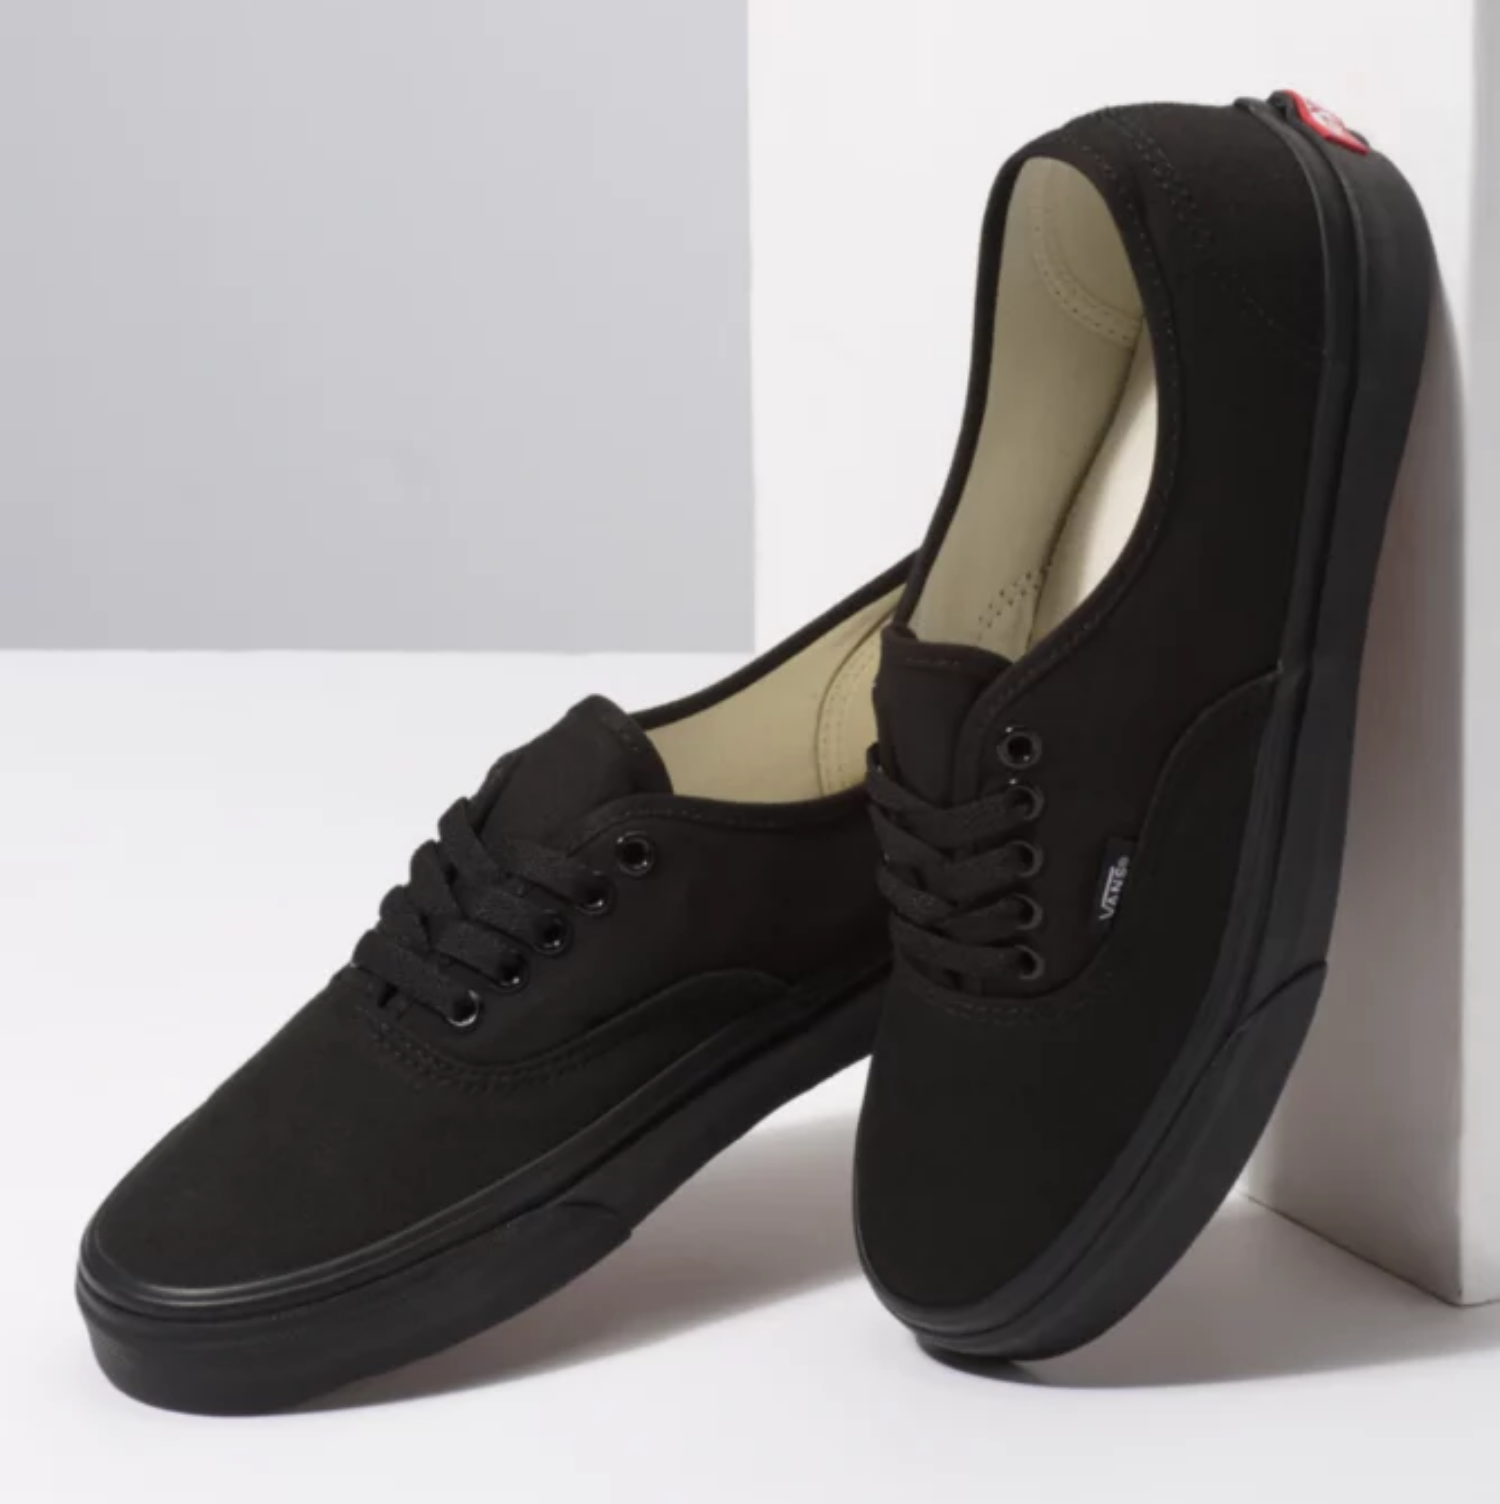 Vans Authentic Black/Black Skate Shoes